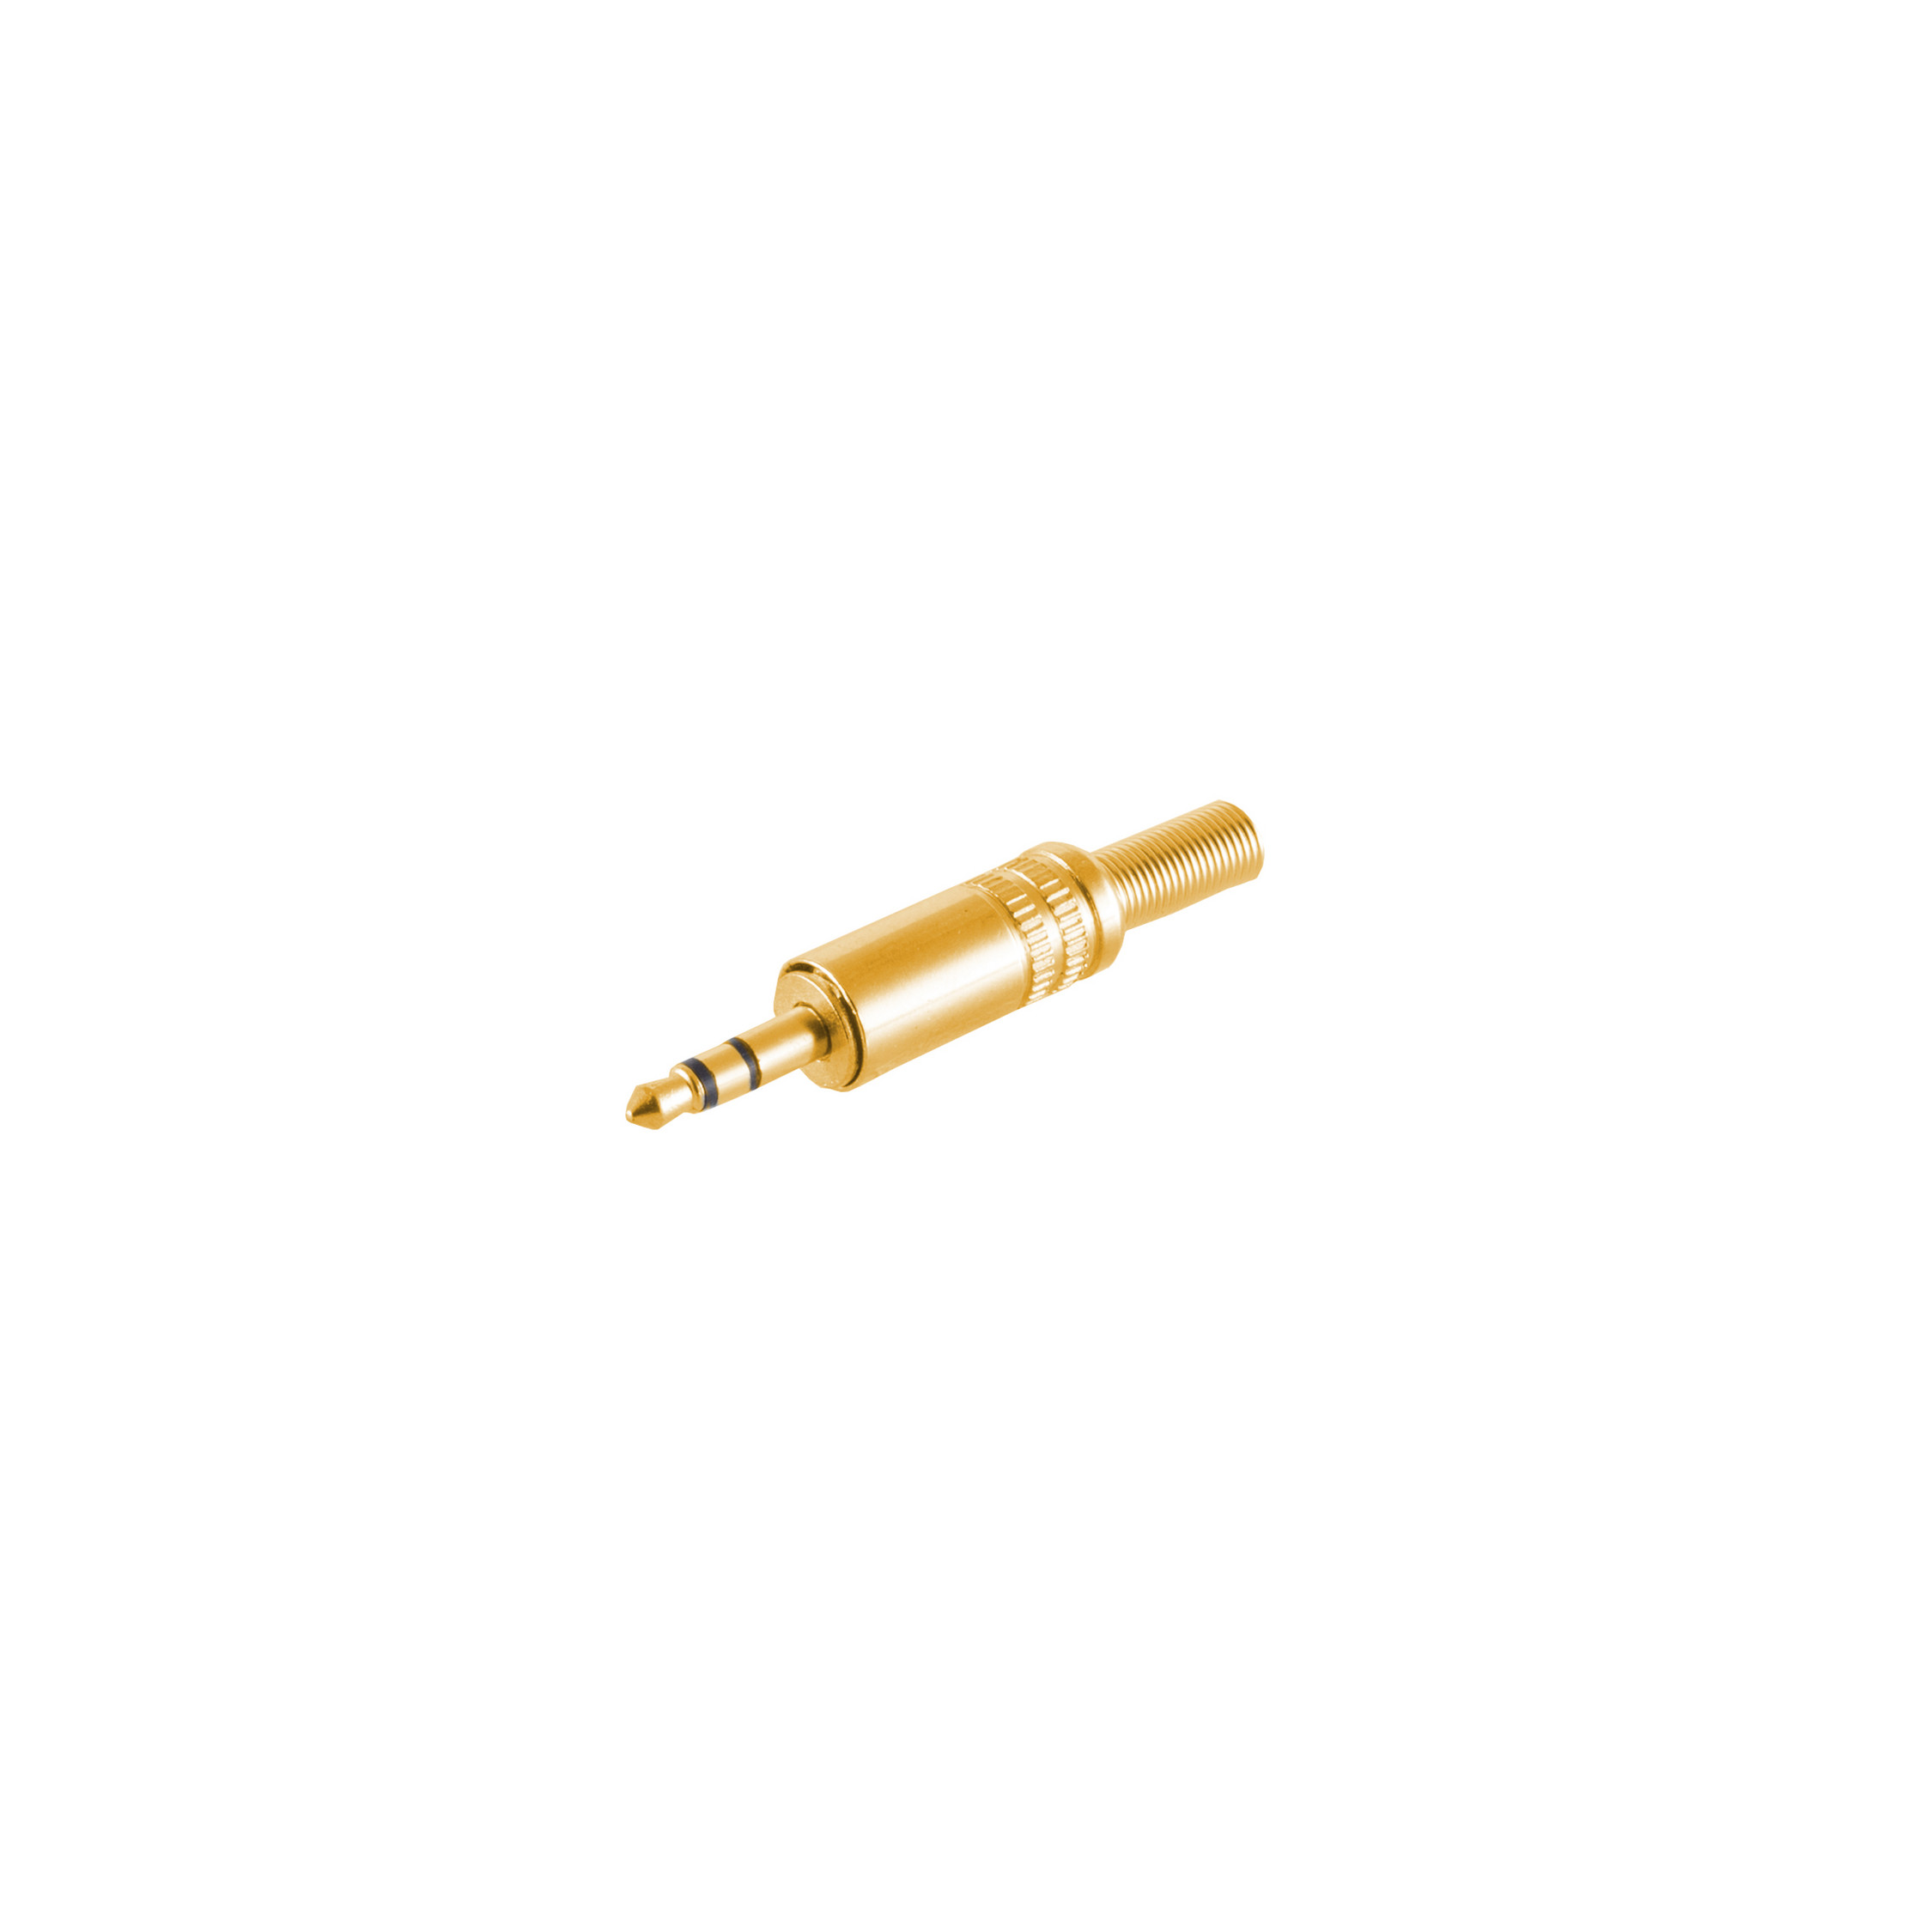 Metall 3,5mm, S/CONN vergoldet MAXIMUM CONNECTIVITY Klinke Stereo Klinkenstecker